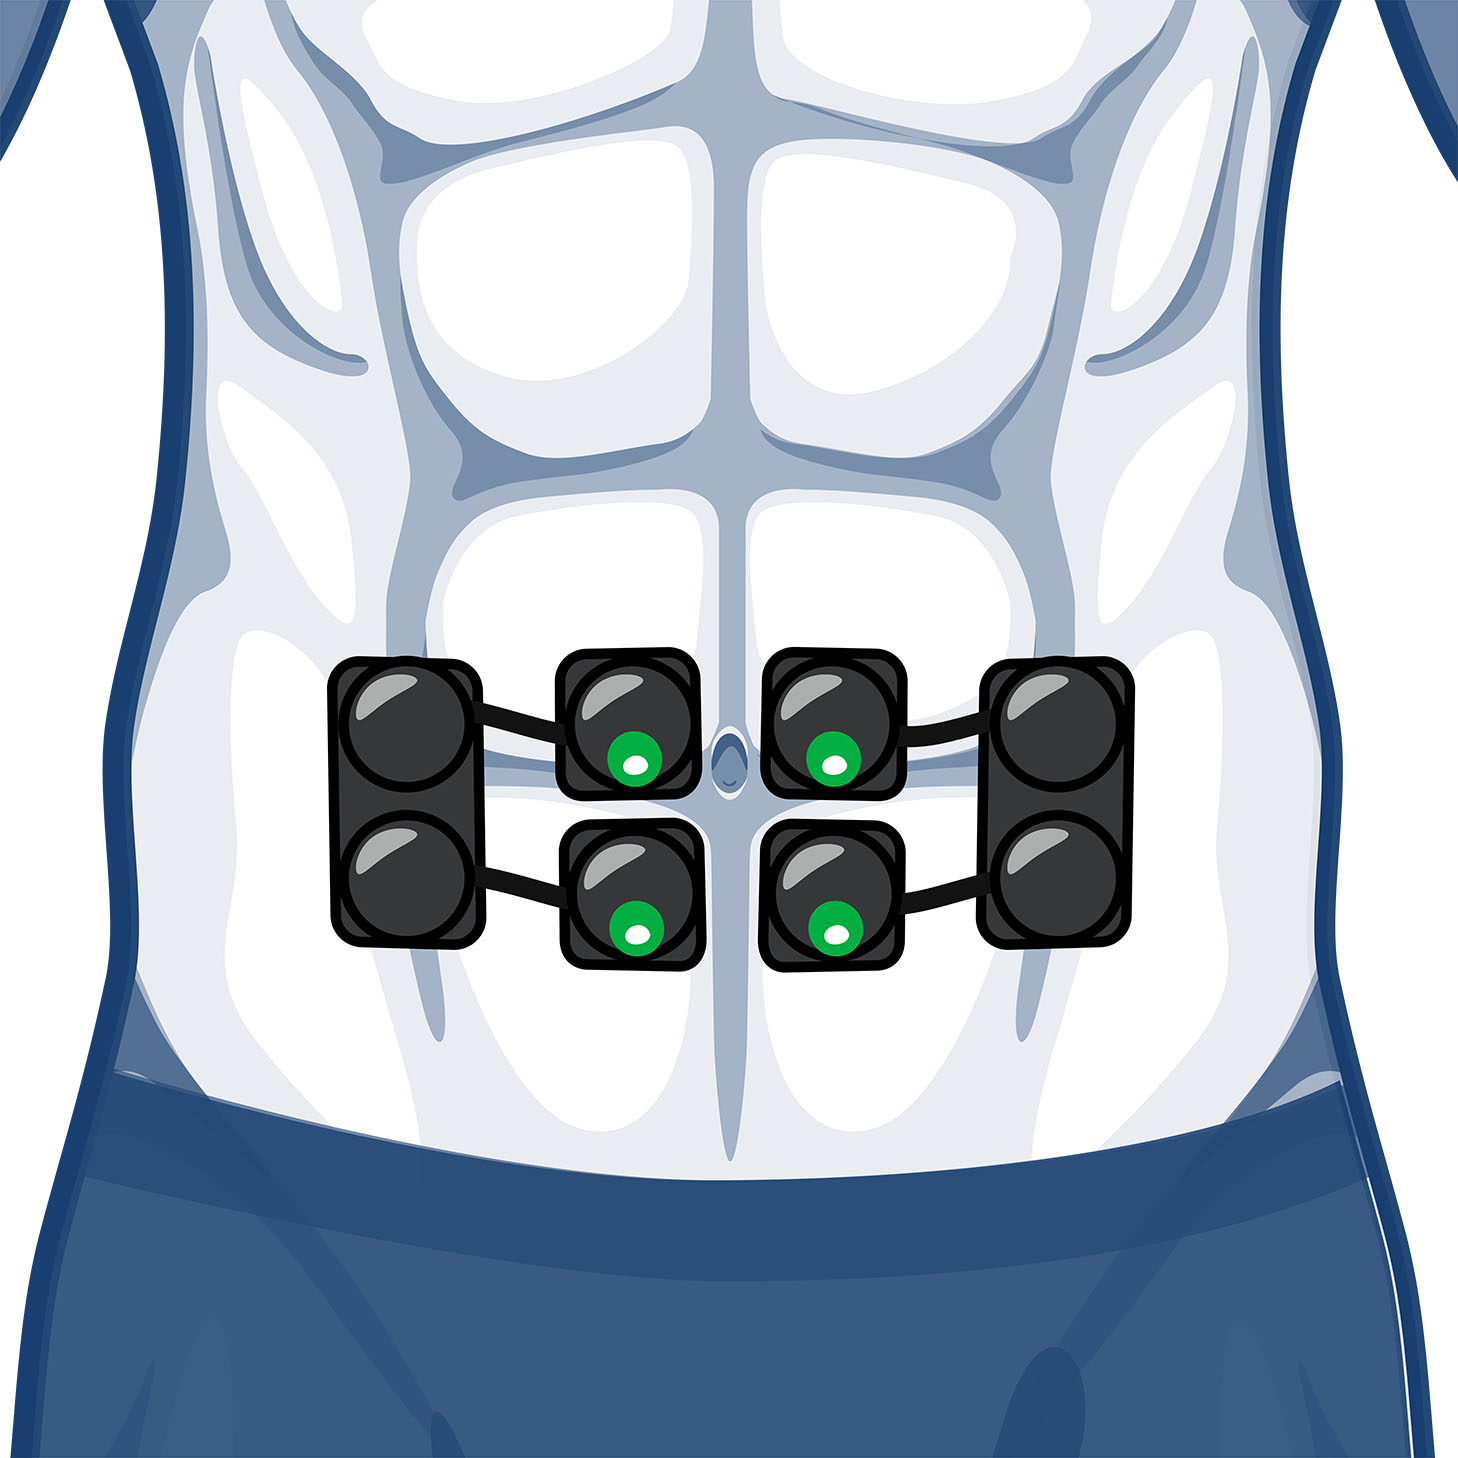 Patch électrostimulation musculaire abdos et bras sans fil